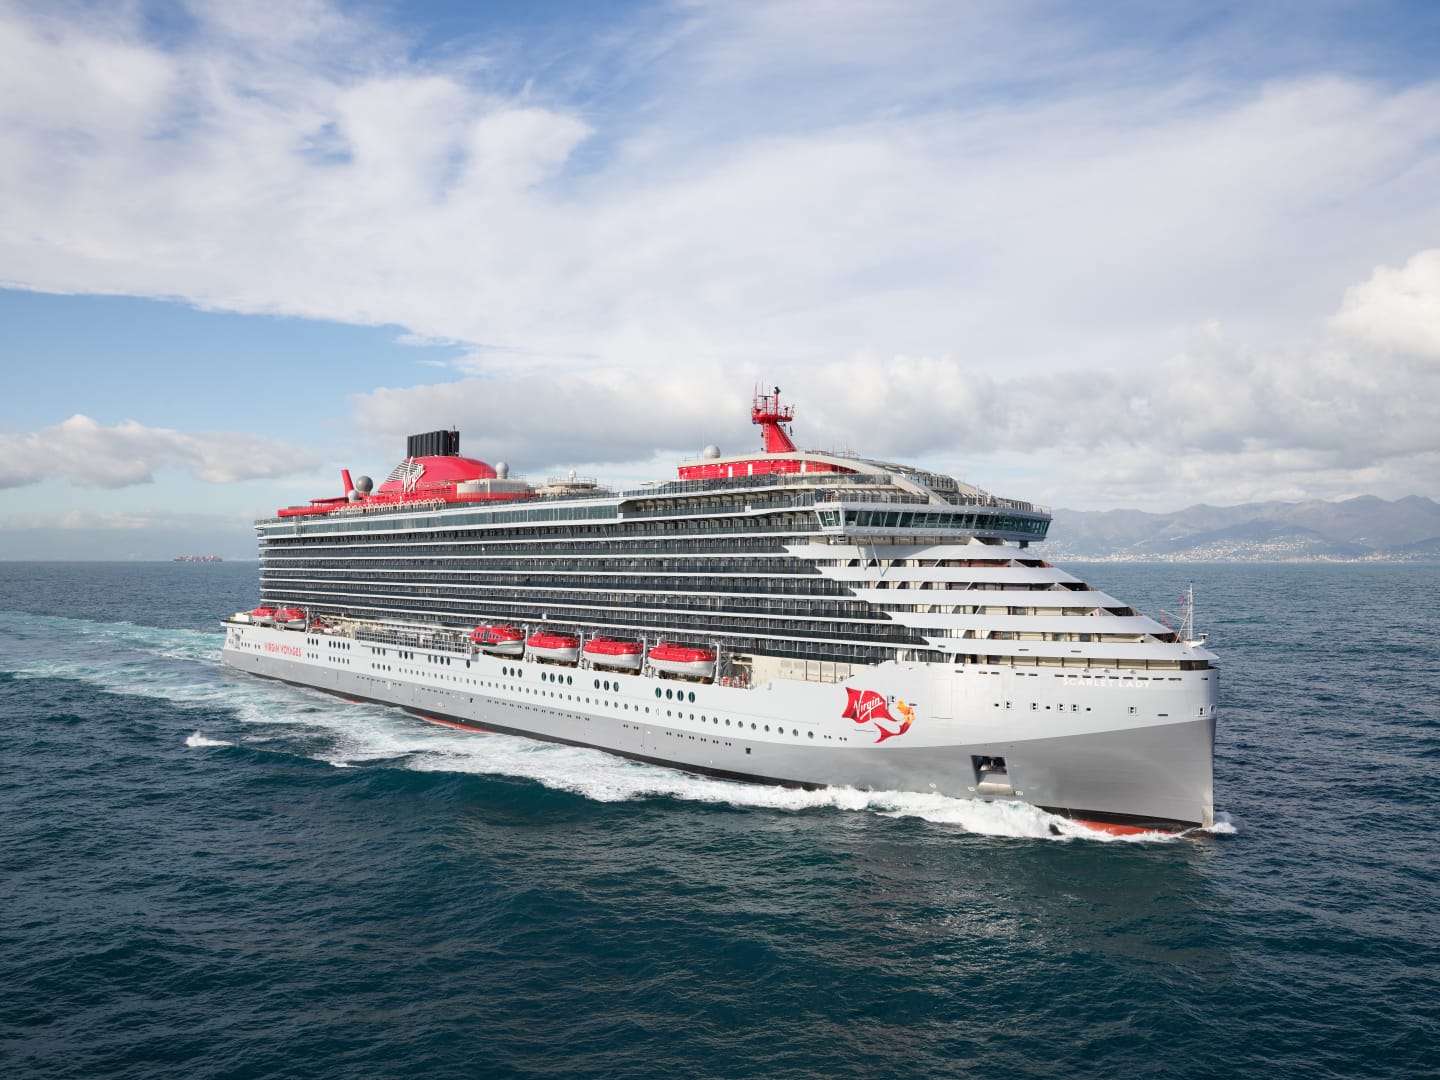 A photo of a Virgin cruise ship in the sea